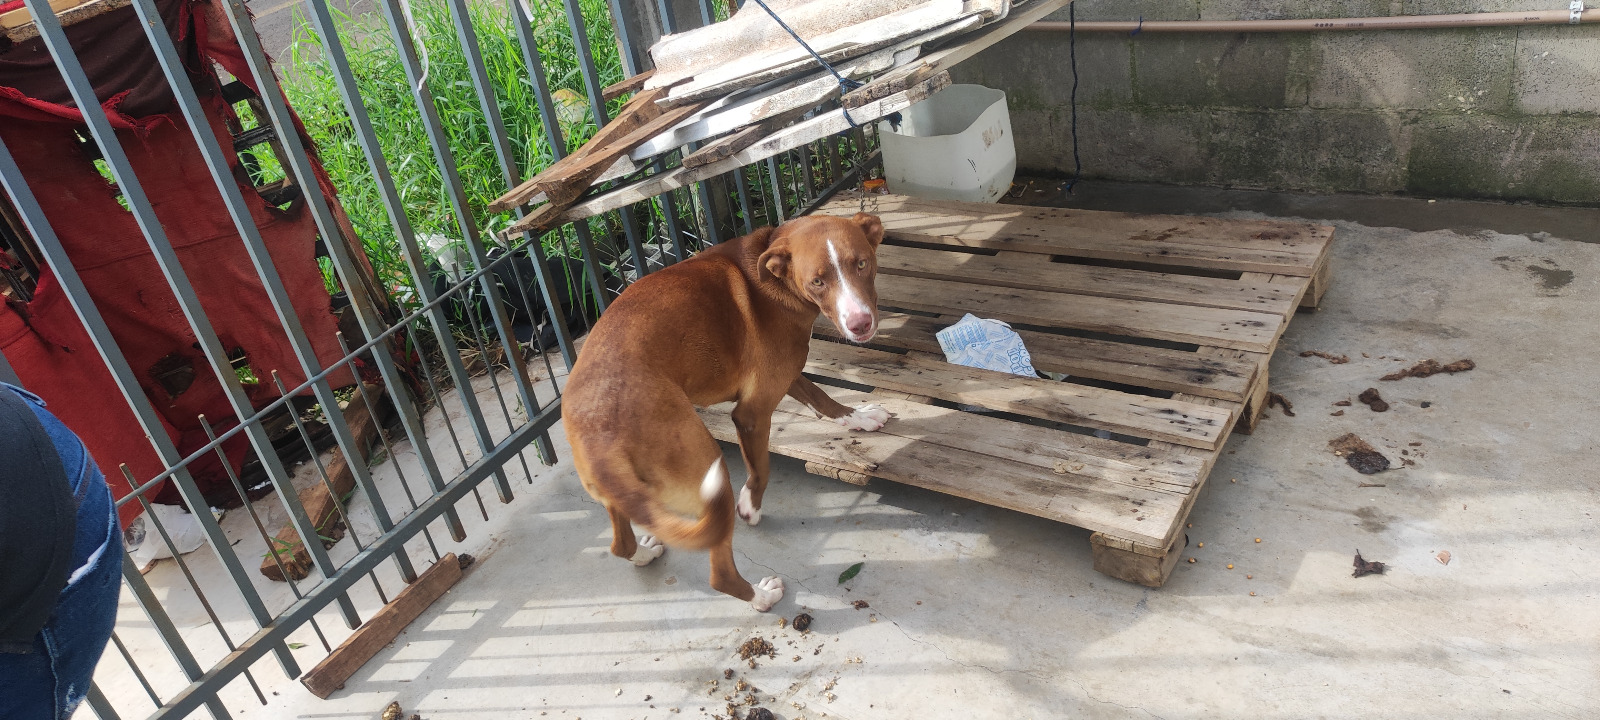 Polícia Civil indicia homem por maus-tratos aos animais após ser filmado agredindo cachorro no pátio da residência